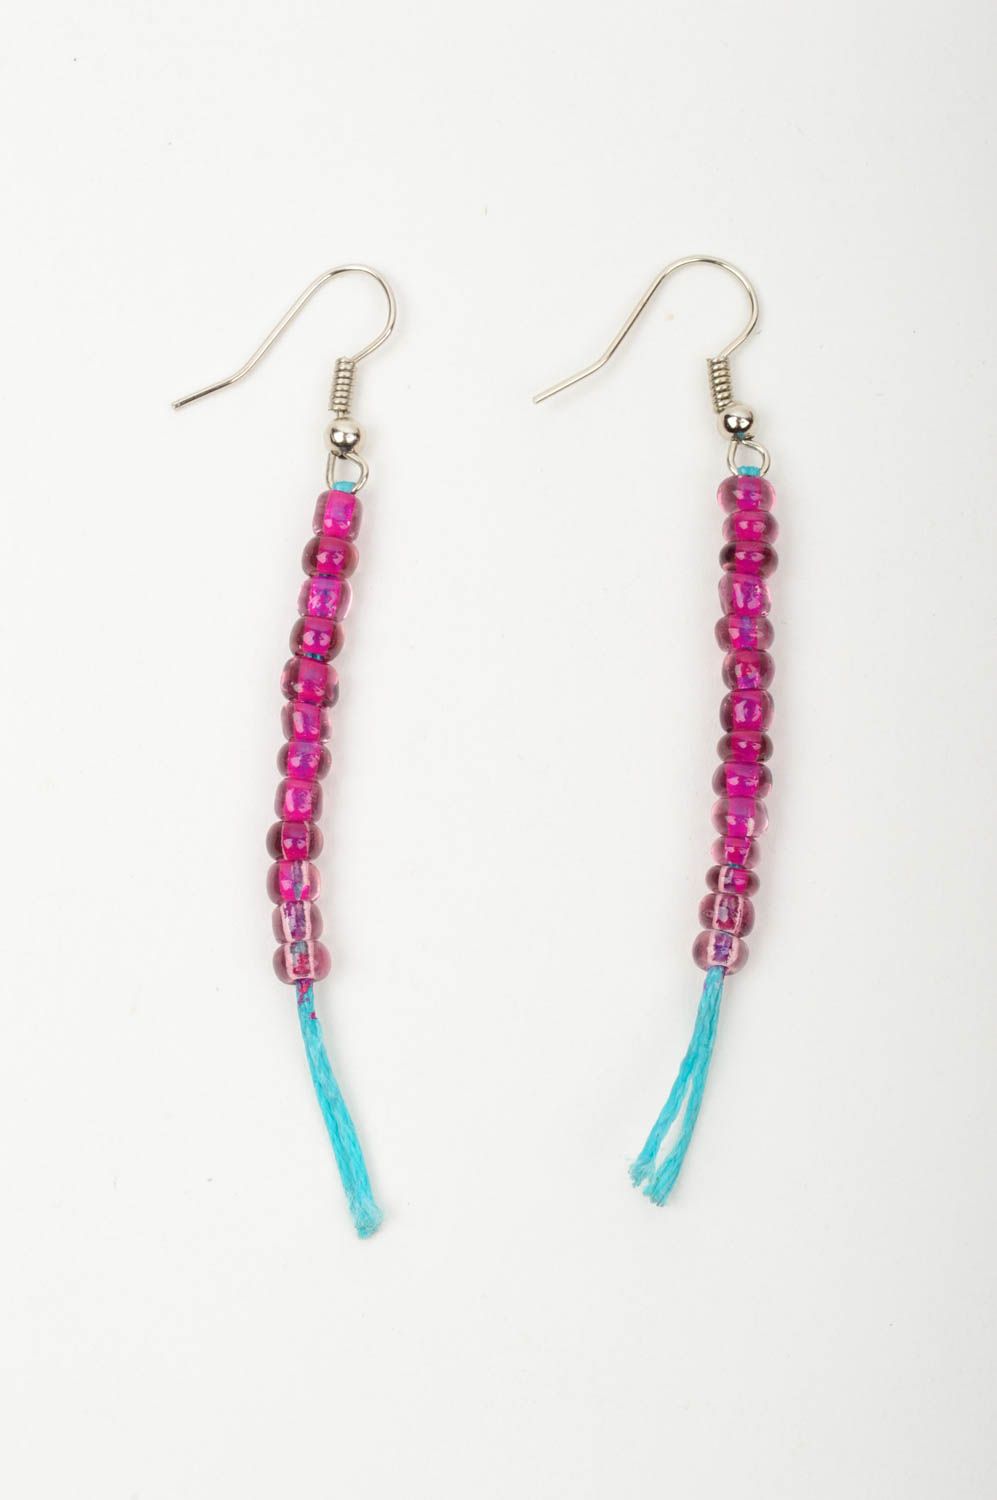 Handmade earrings designer earrings beads earrings for girl gift ideas photo 3